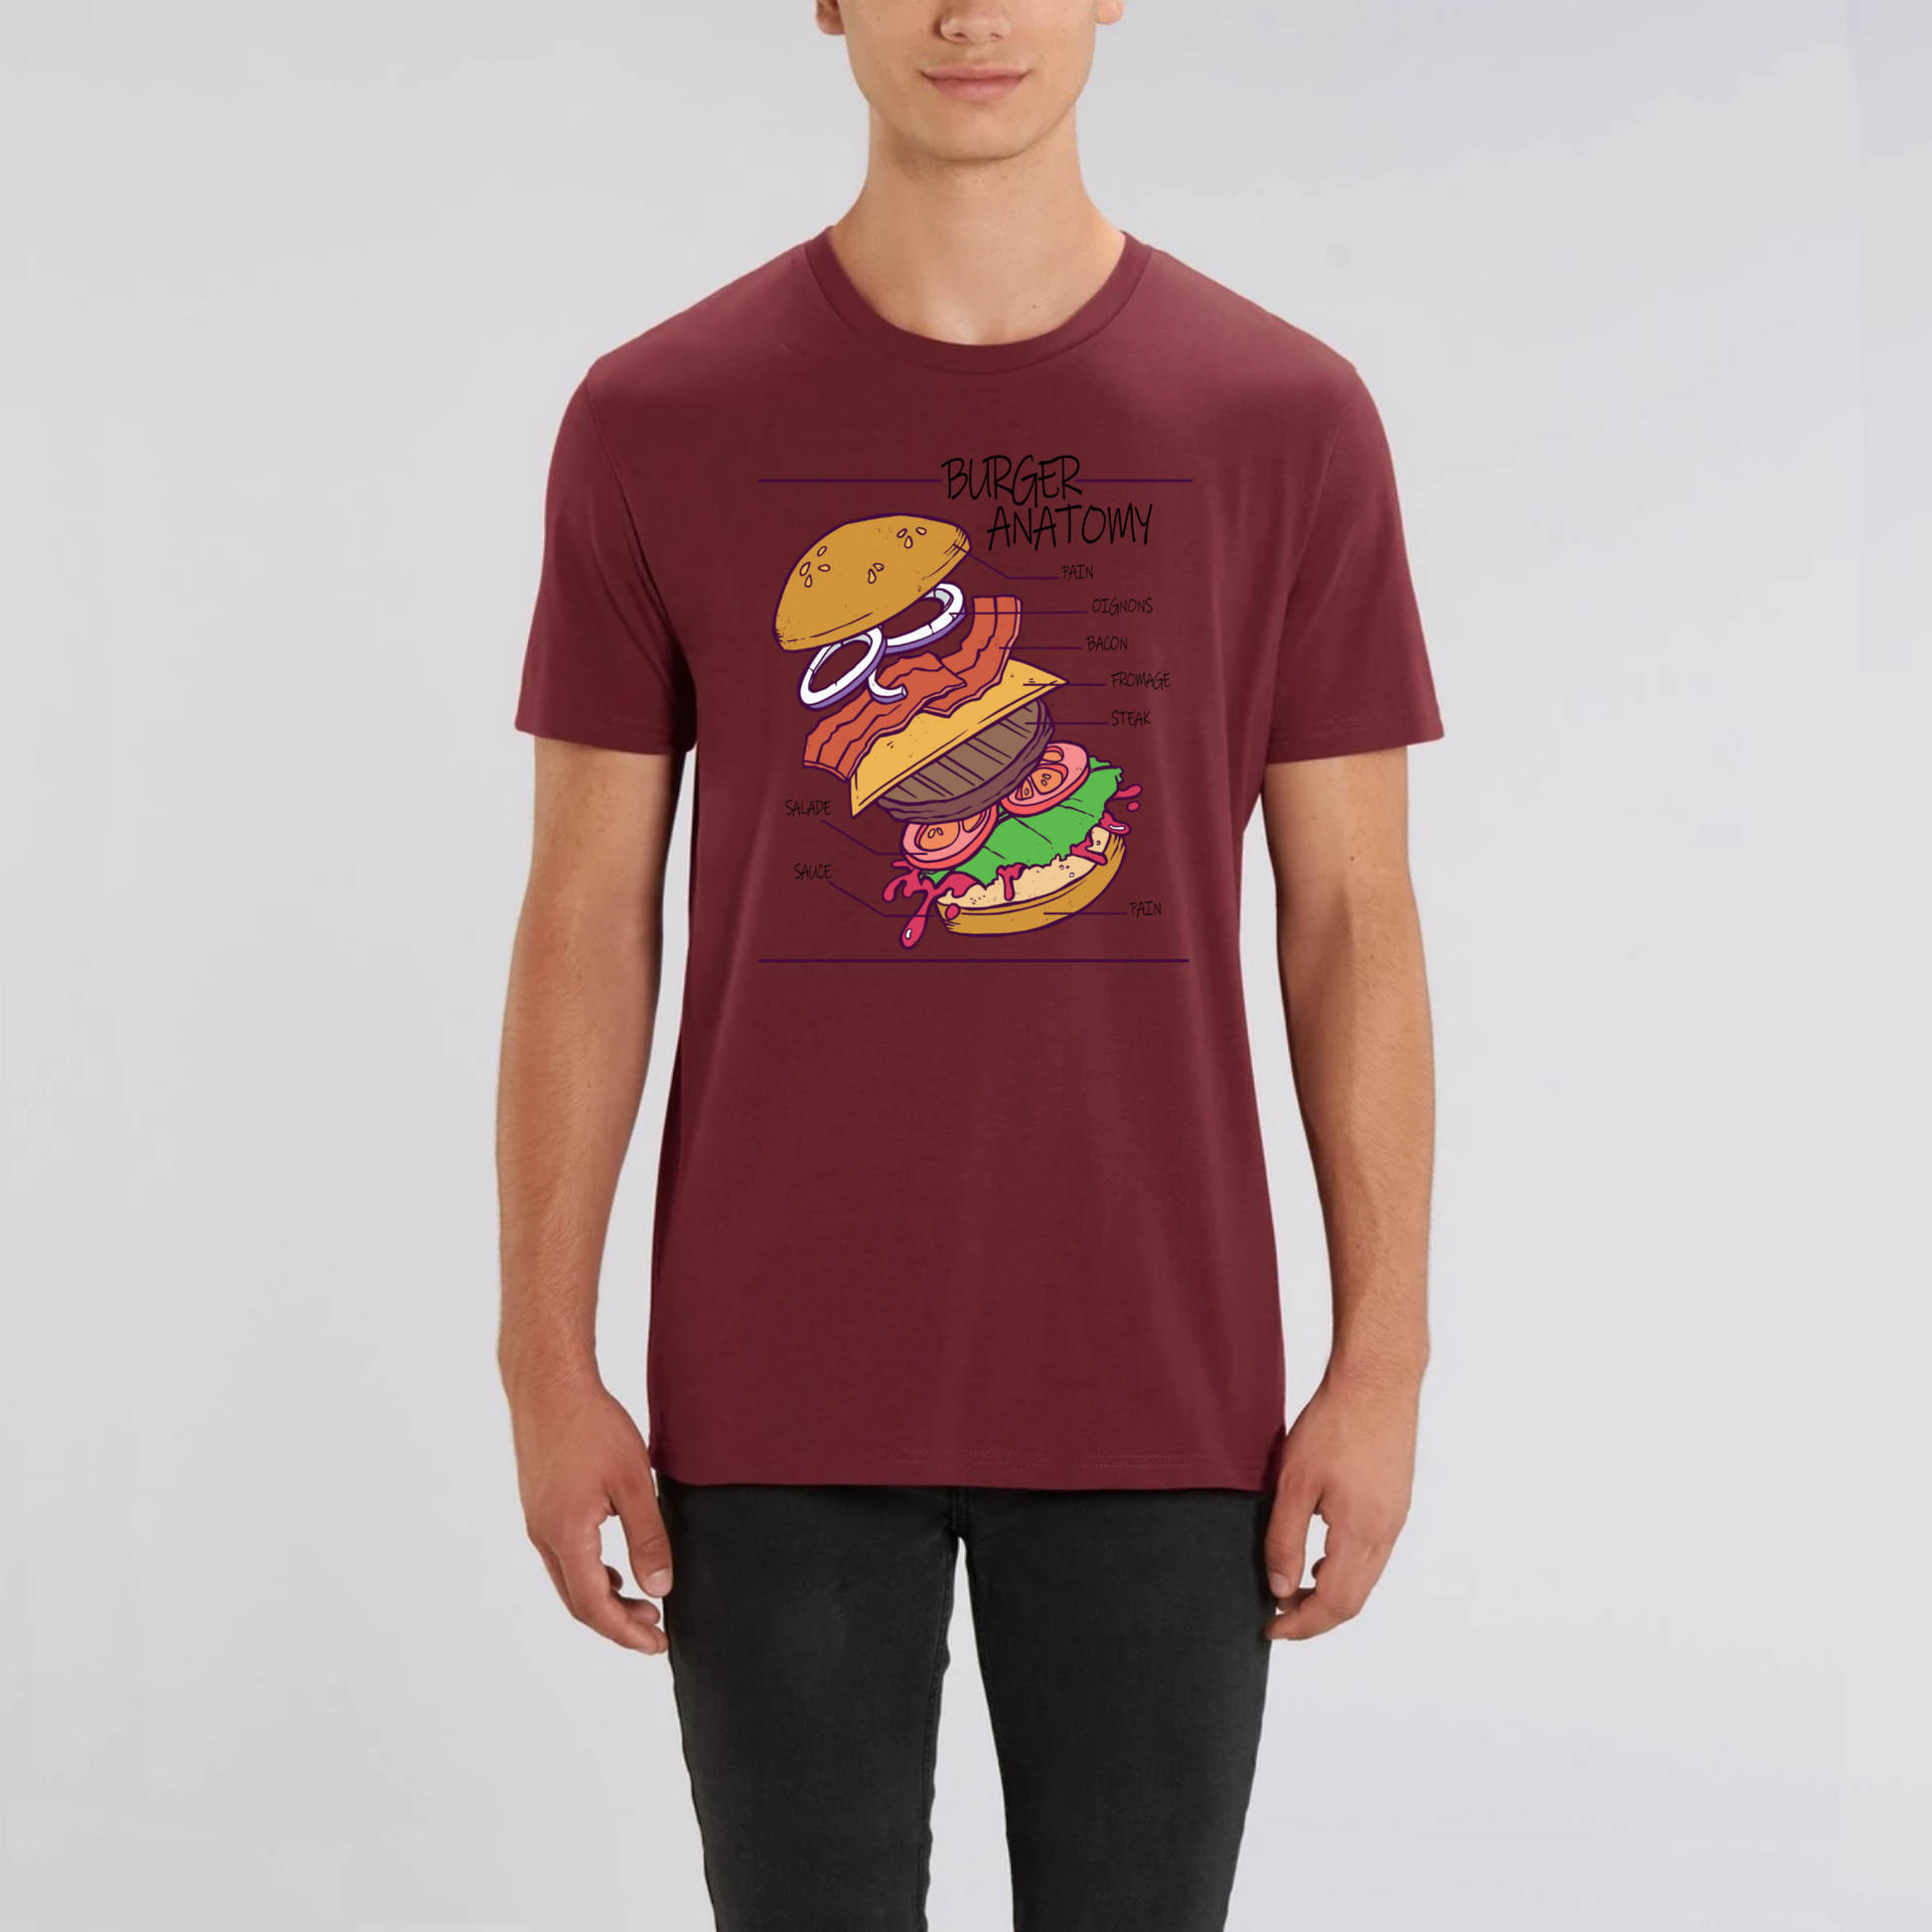 t-shirt burger anatomy en coton bio pour homme de T-French, t-shirt homme burger, t-shirt burger, tee shirt en coton bio homme, t-shirt homme humour, t-shirt humour nourriture, Bordeaux